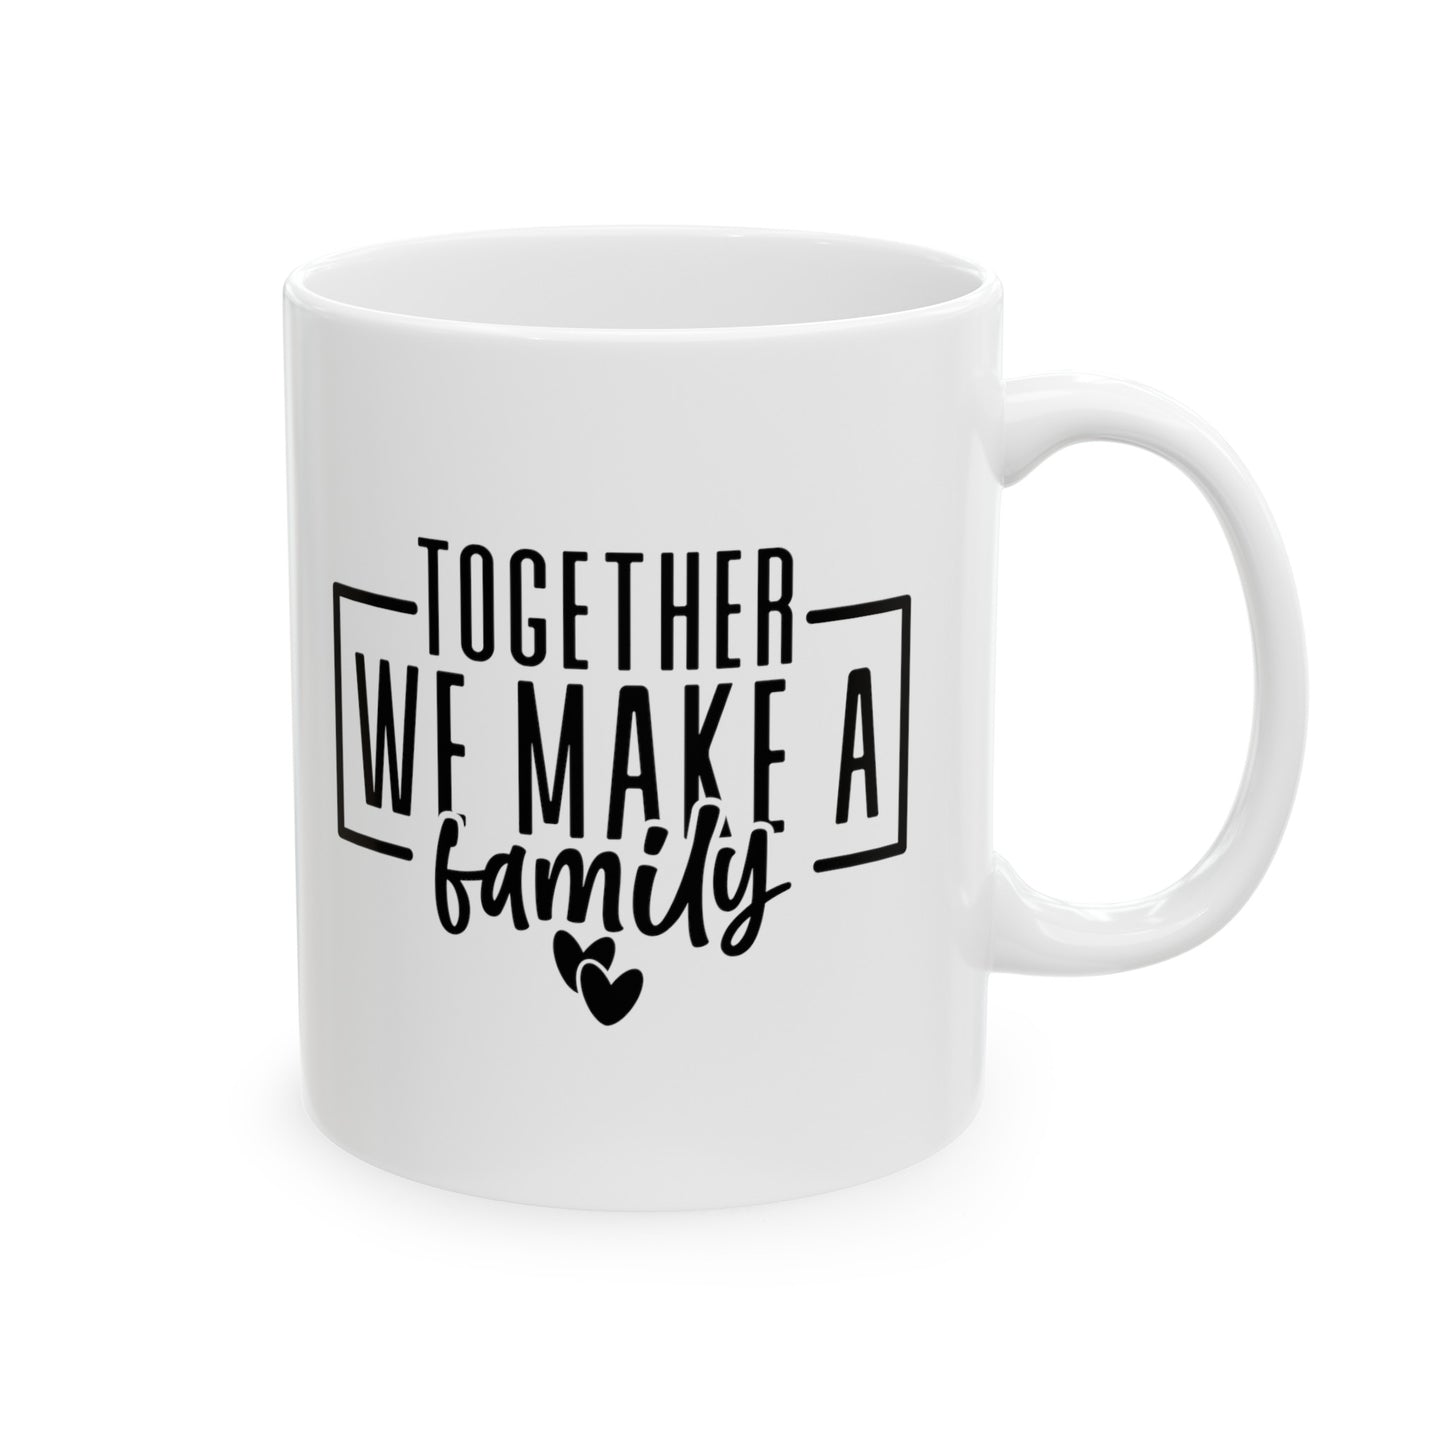 Together We Make a Family Ceramic Mug, (11oz, 15oz)